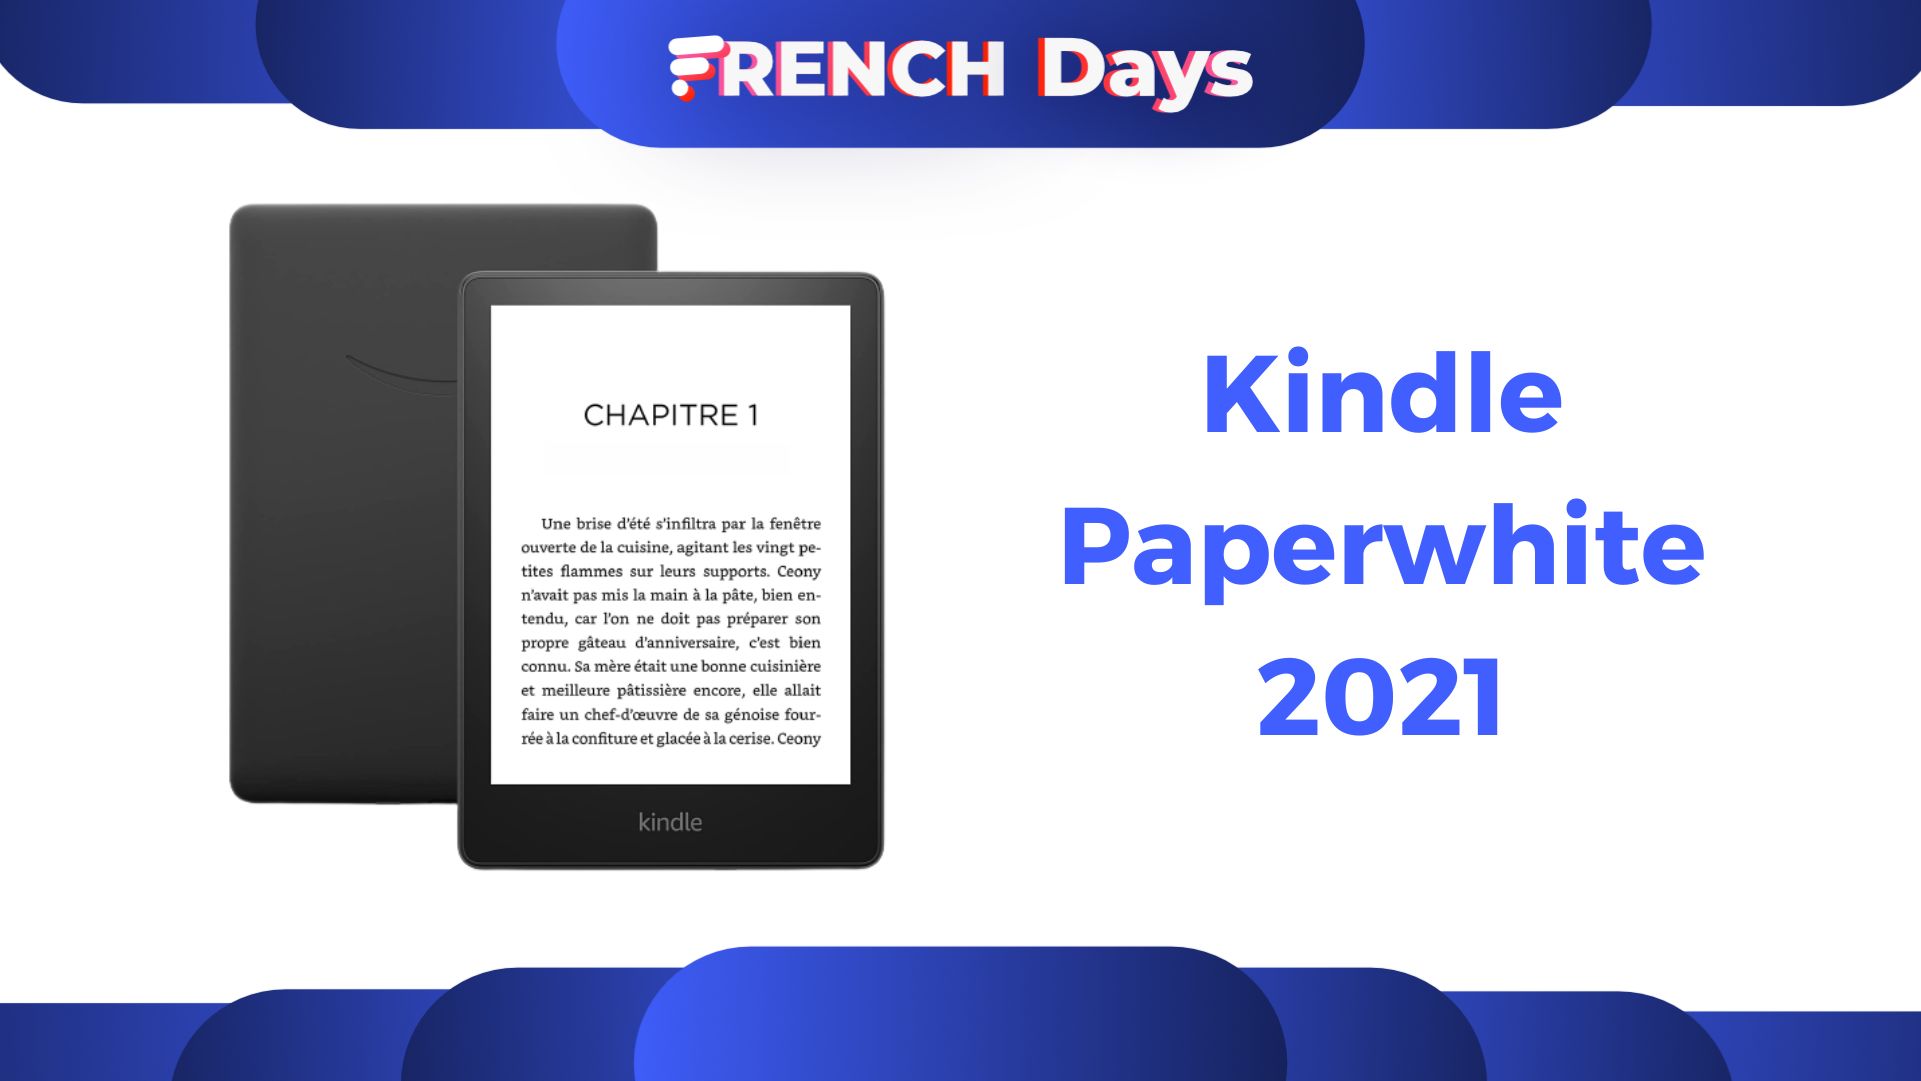 La Kindle Paperwhite 2021 est de retour à son prix le plus bas